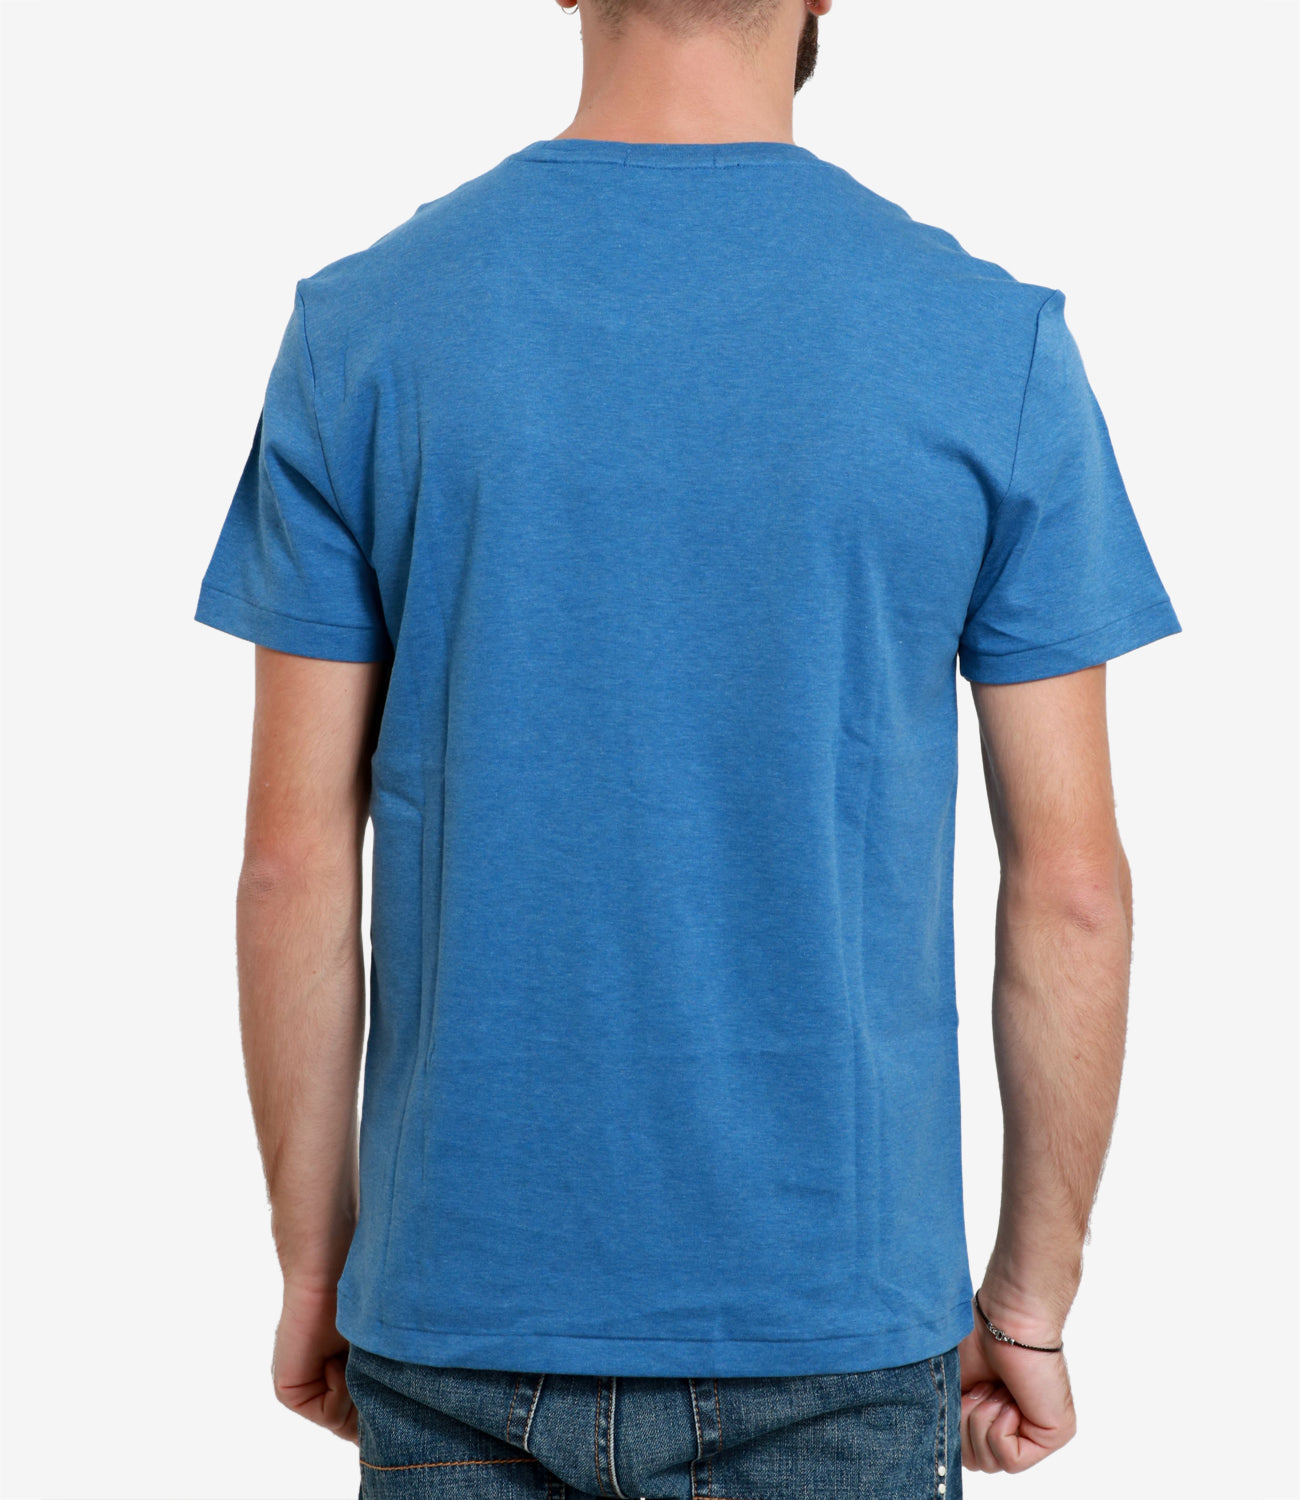 Polo Ralph Lauren | Blue T-Shirt